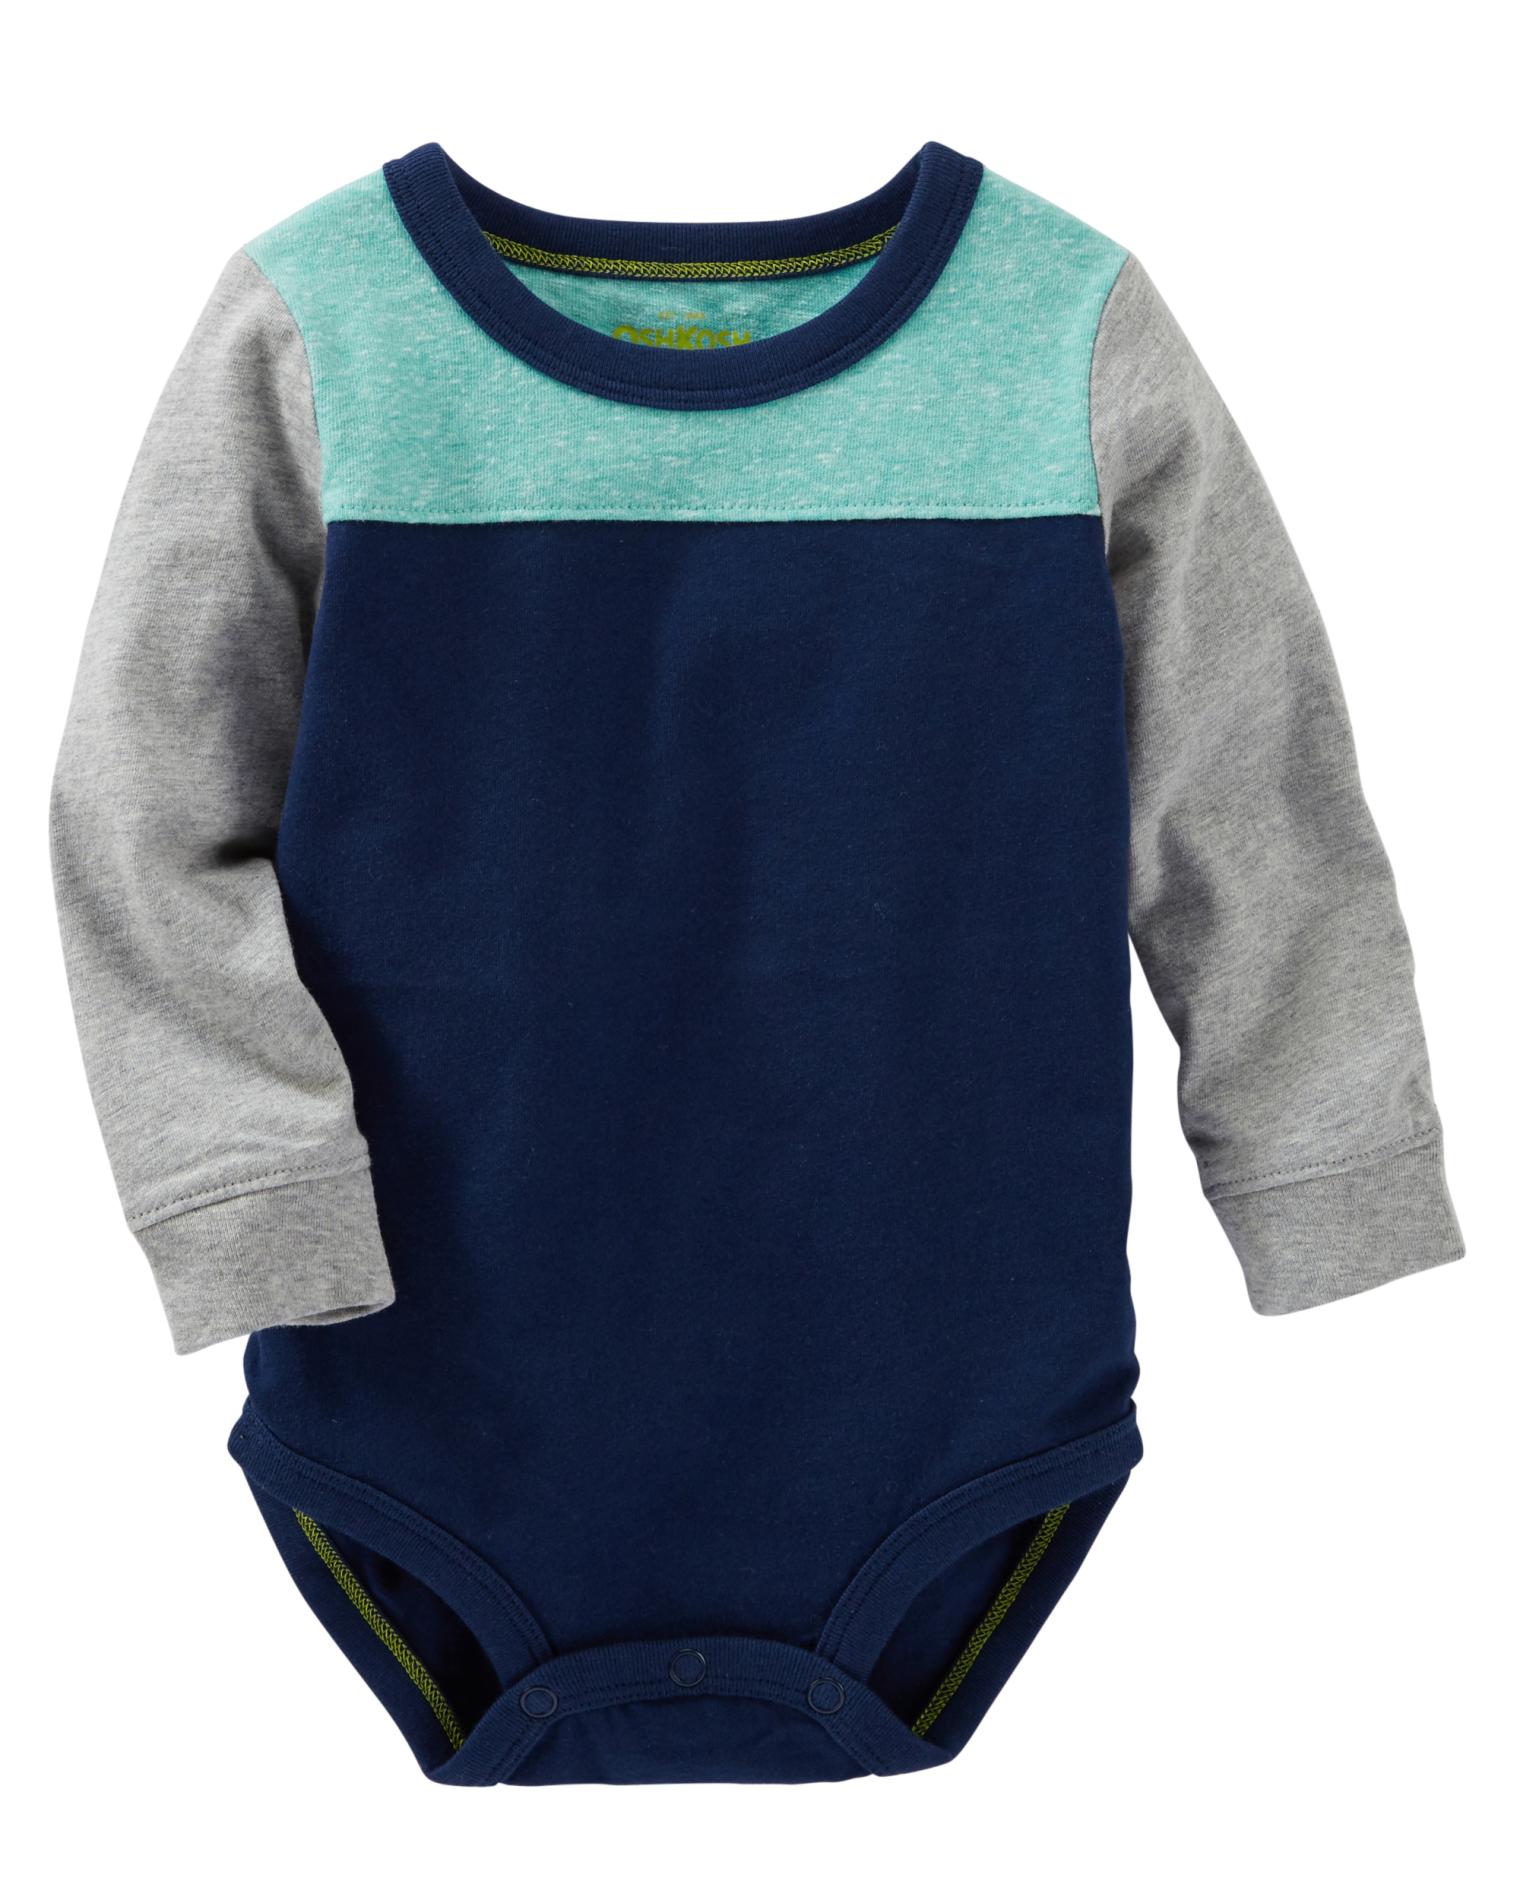 OshKosh Newborn & Infant Boys' Long-Sleeve Bodysuit - Colorblock